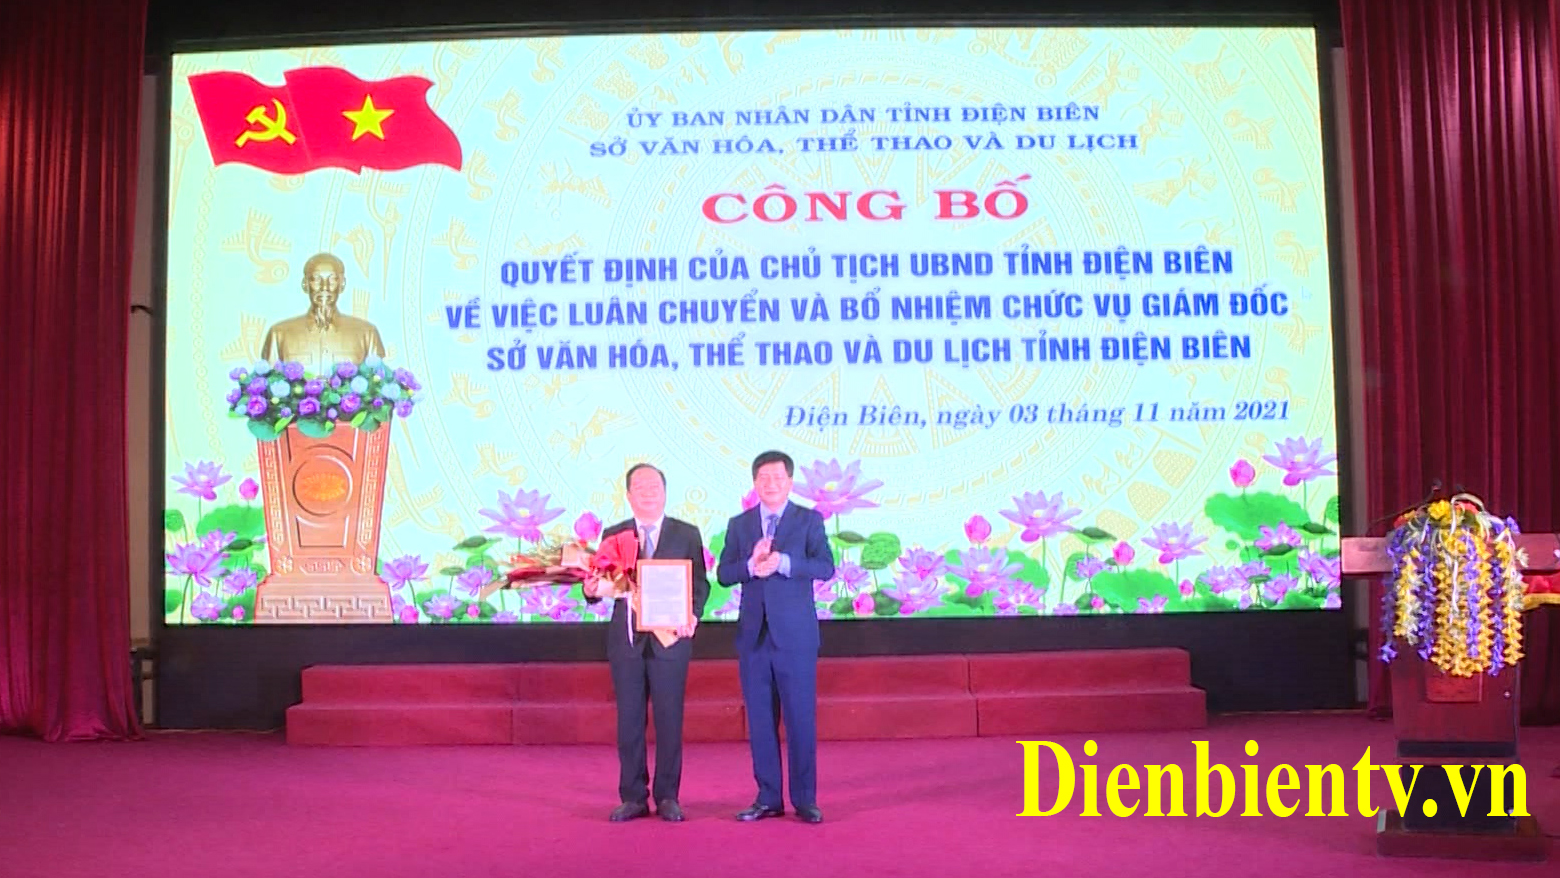 Đồng chí Lê Thành Đô, Phó Bí thư Tỉnh ủy, Chủ tịch UBND tỉnh trao quyết định của UBND tỉnh về công tác cán bộ cho đồng chí Nguyễn Minh Phú.